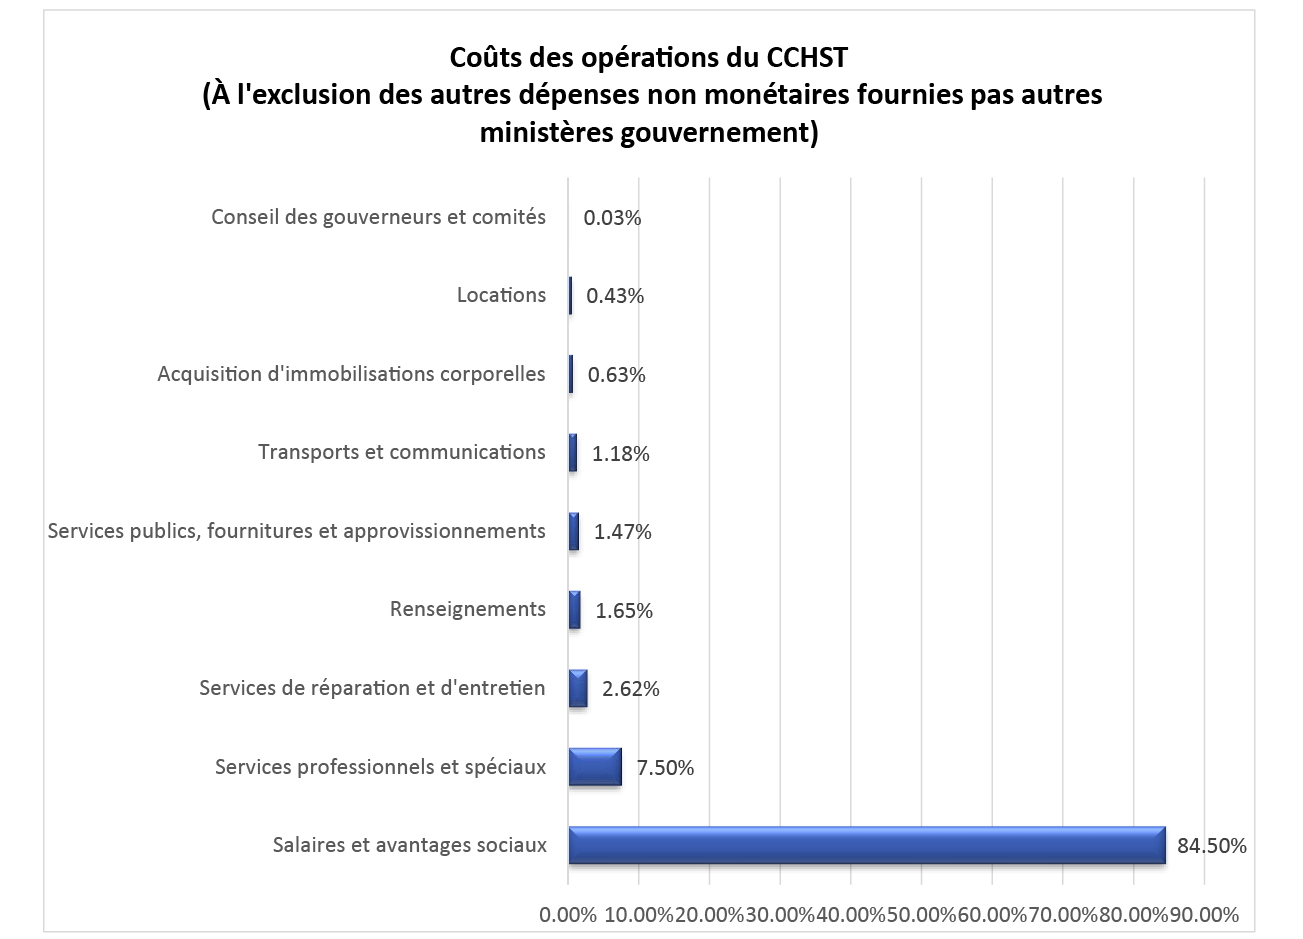 Graphique des Coûts des opérations du CCHST
                          (À l'exclusion des autres dépenses non monétaires fournies pas autres ministères gouvernement)